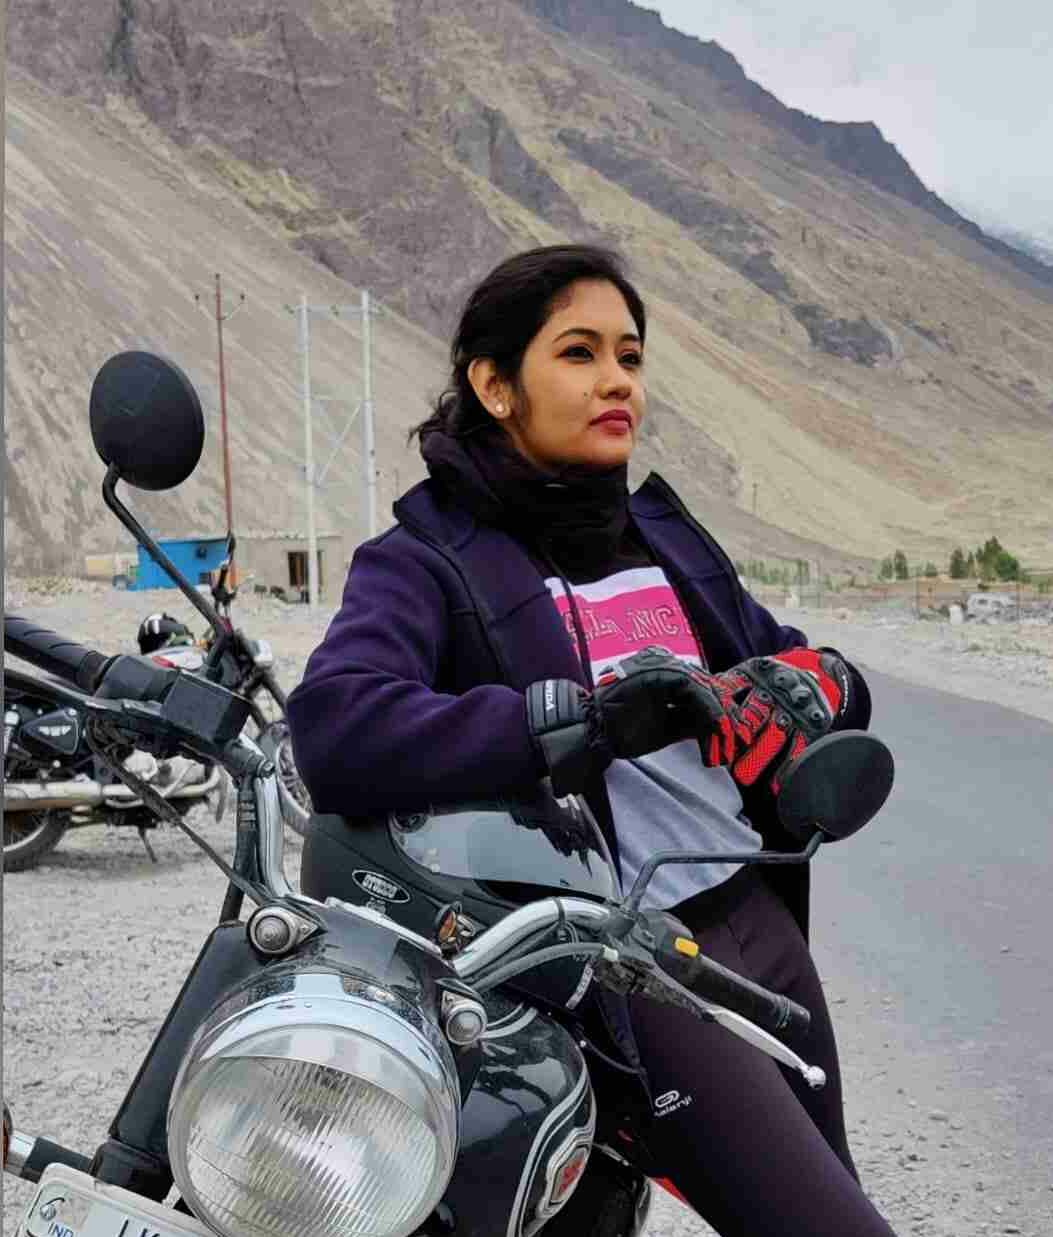 Sruthi Shanmuga Priya with her Royal Enfield Bullet motorcycle